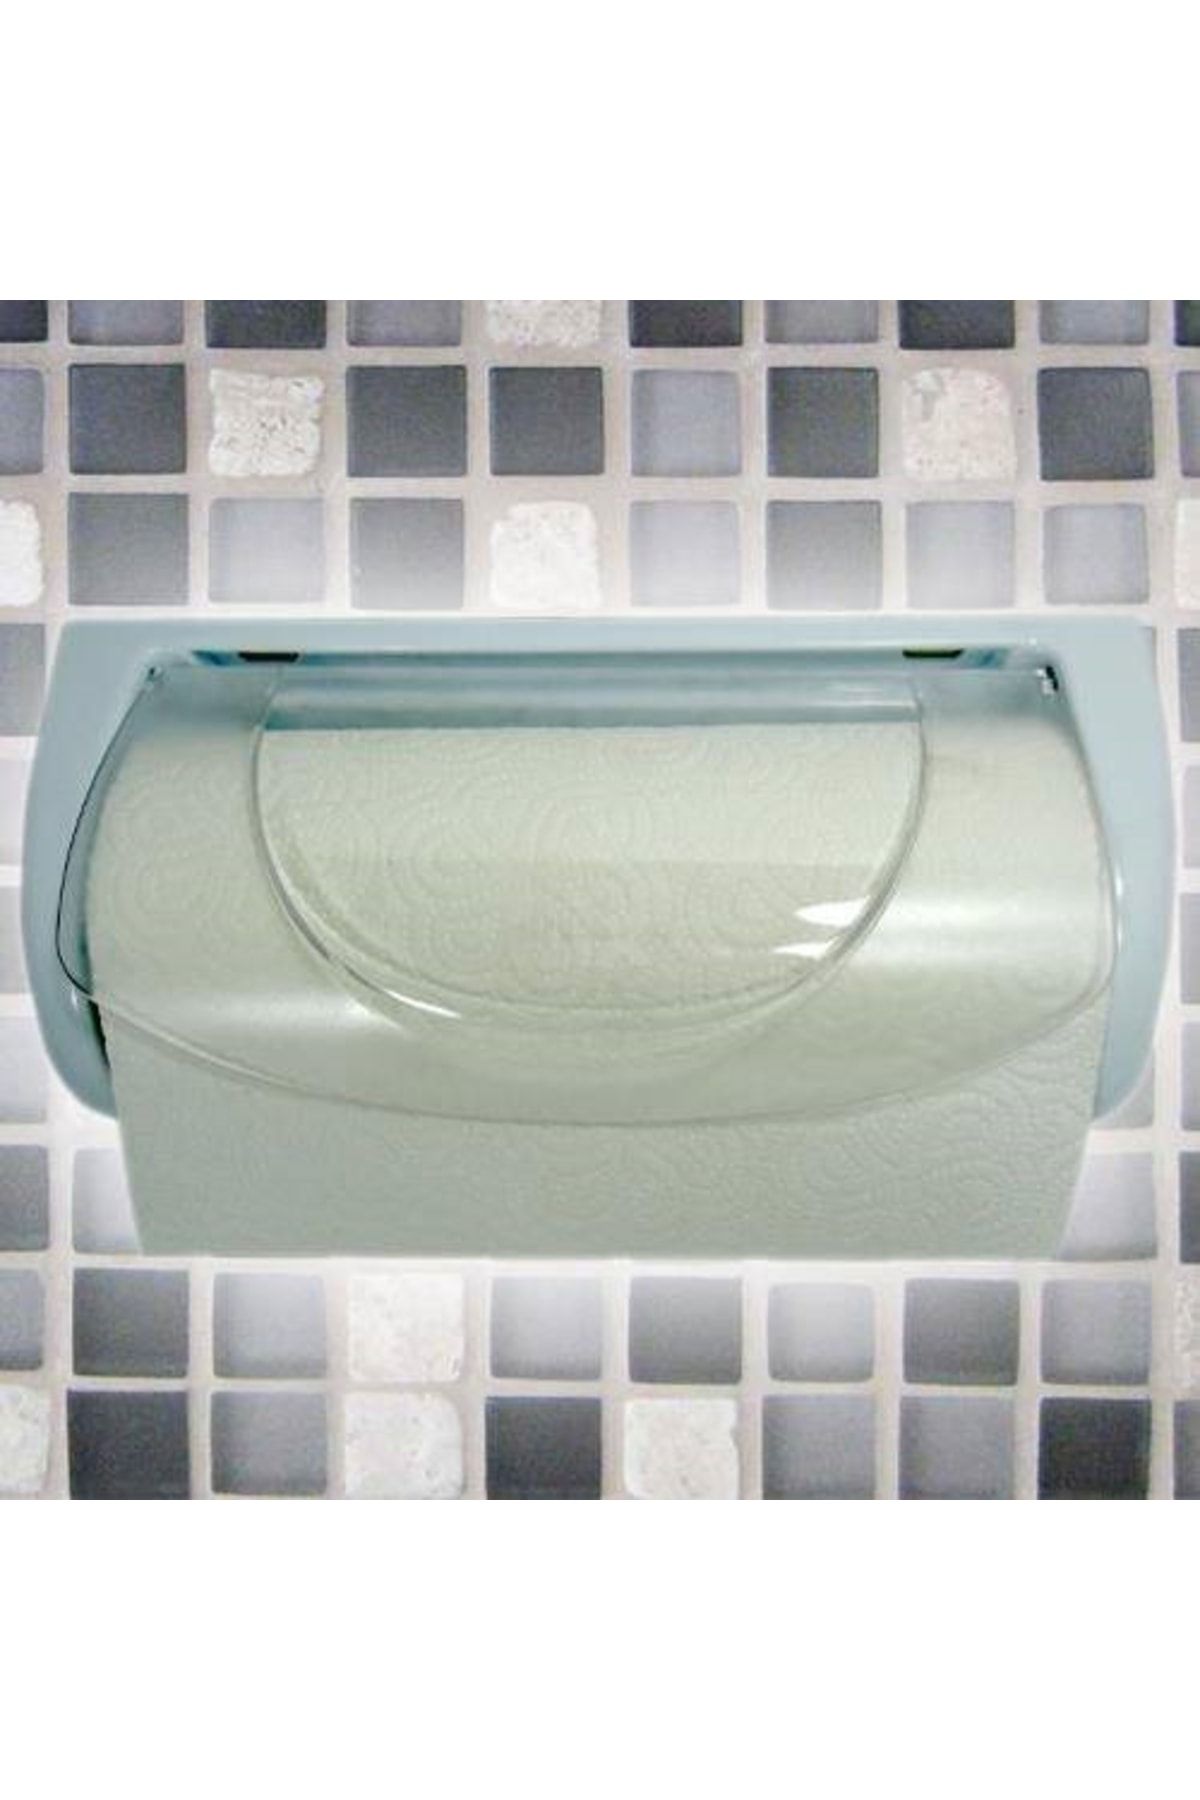 Çokuygunuz Plastik Gövdeli Banyo Mutfak Kağıt Havlu Tutucağı Peçetelik Tutucu